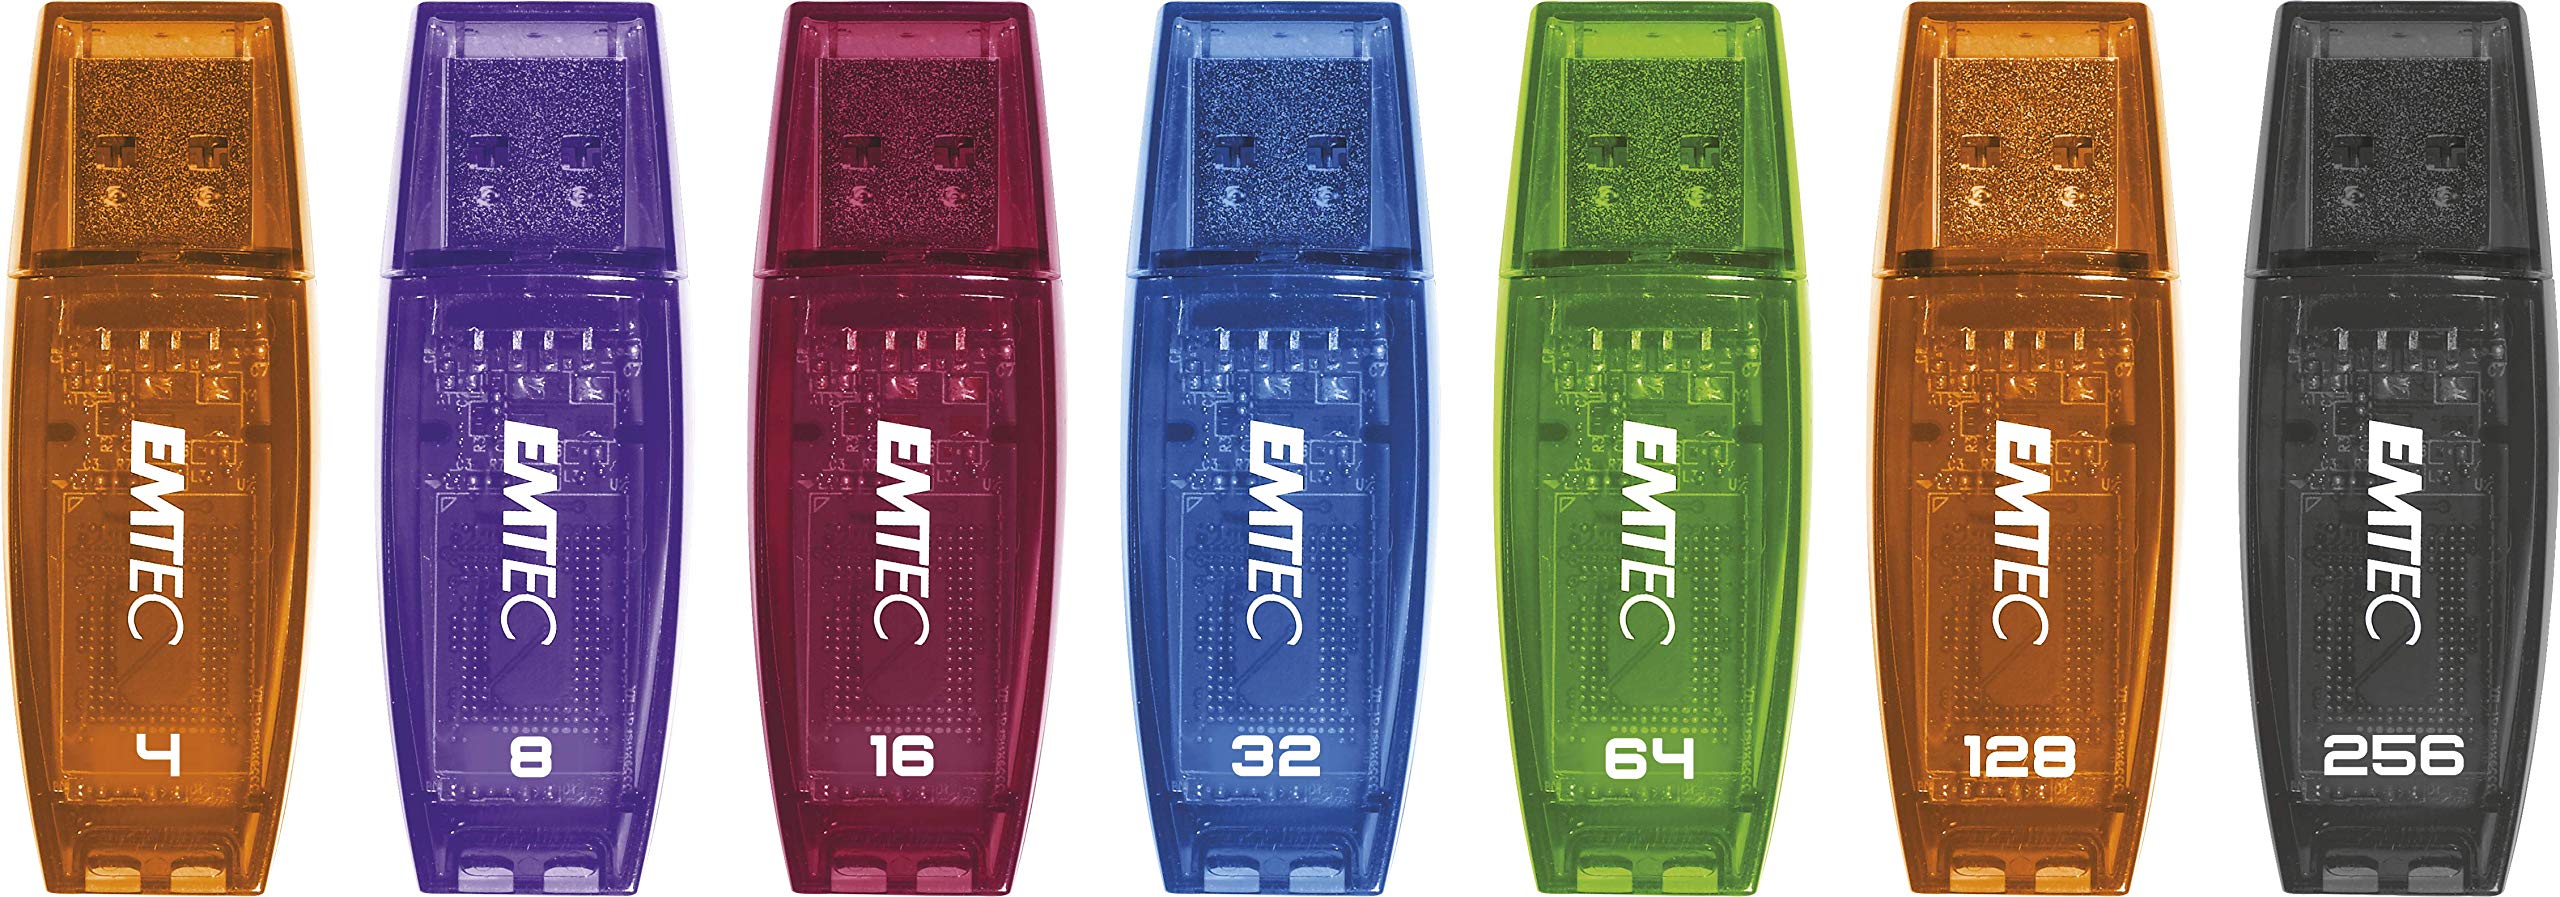 Emtec C410 Color Mix Flash Drive, 32GB, Blue, ECMMD32GC410